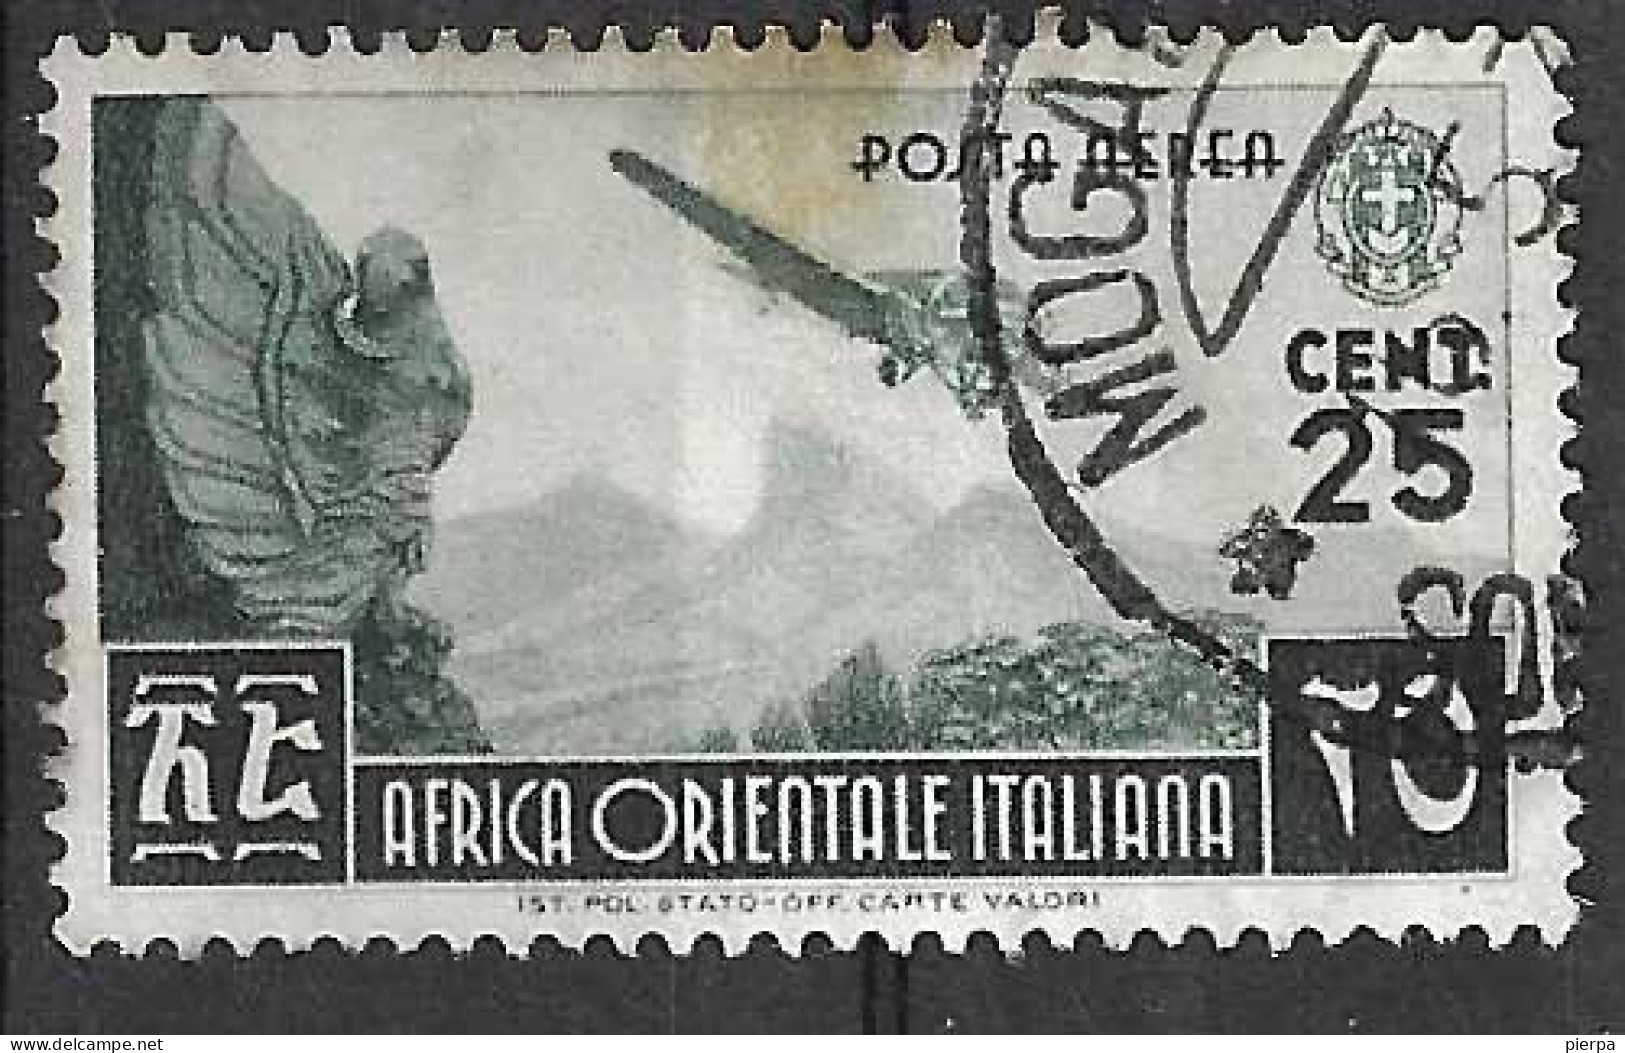 AFRICA ORIENTALE ITALIANA - 1938 - POSTA AEREA  -CENT. 25 - USATO (YVERT AV1- MICHEL 21 - SS A1) - Africa Oriental Italiana